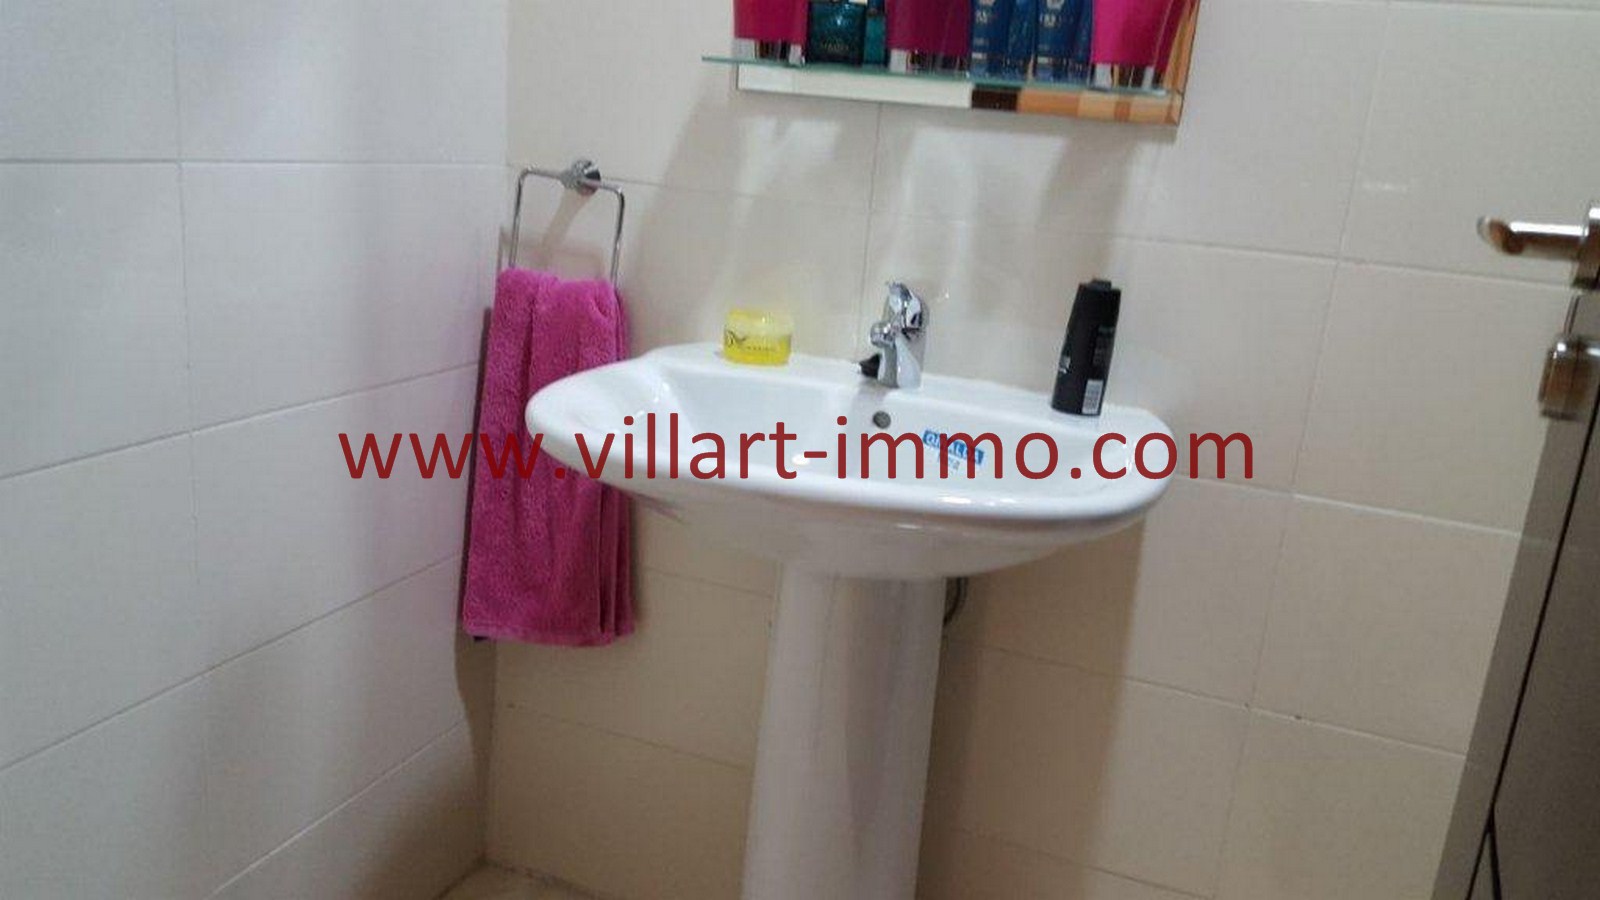 7-Vente-Appartement-Tanger-Toilette de service -VA514-Route de Rabat-Villart Immo